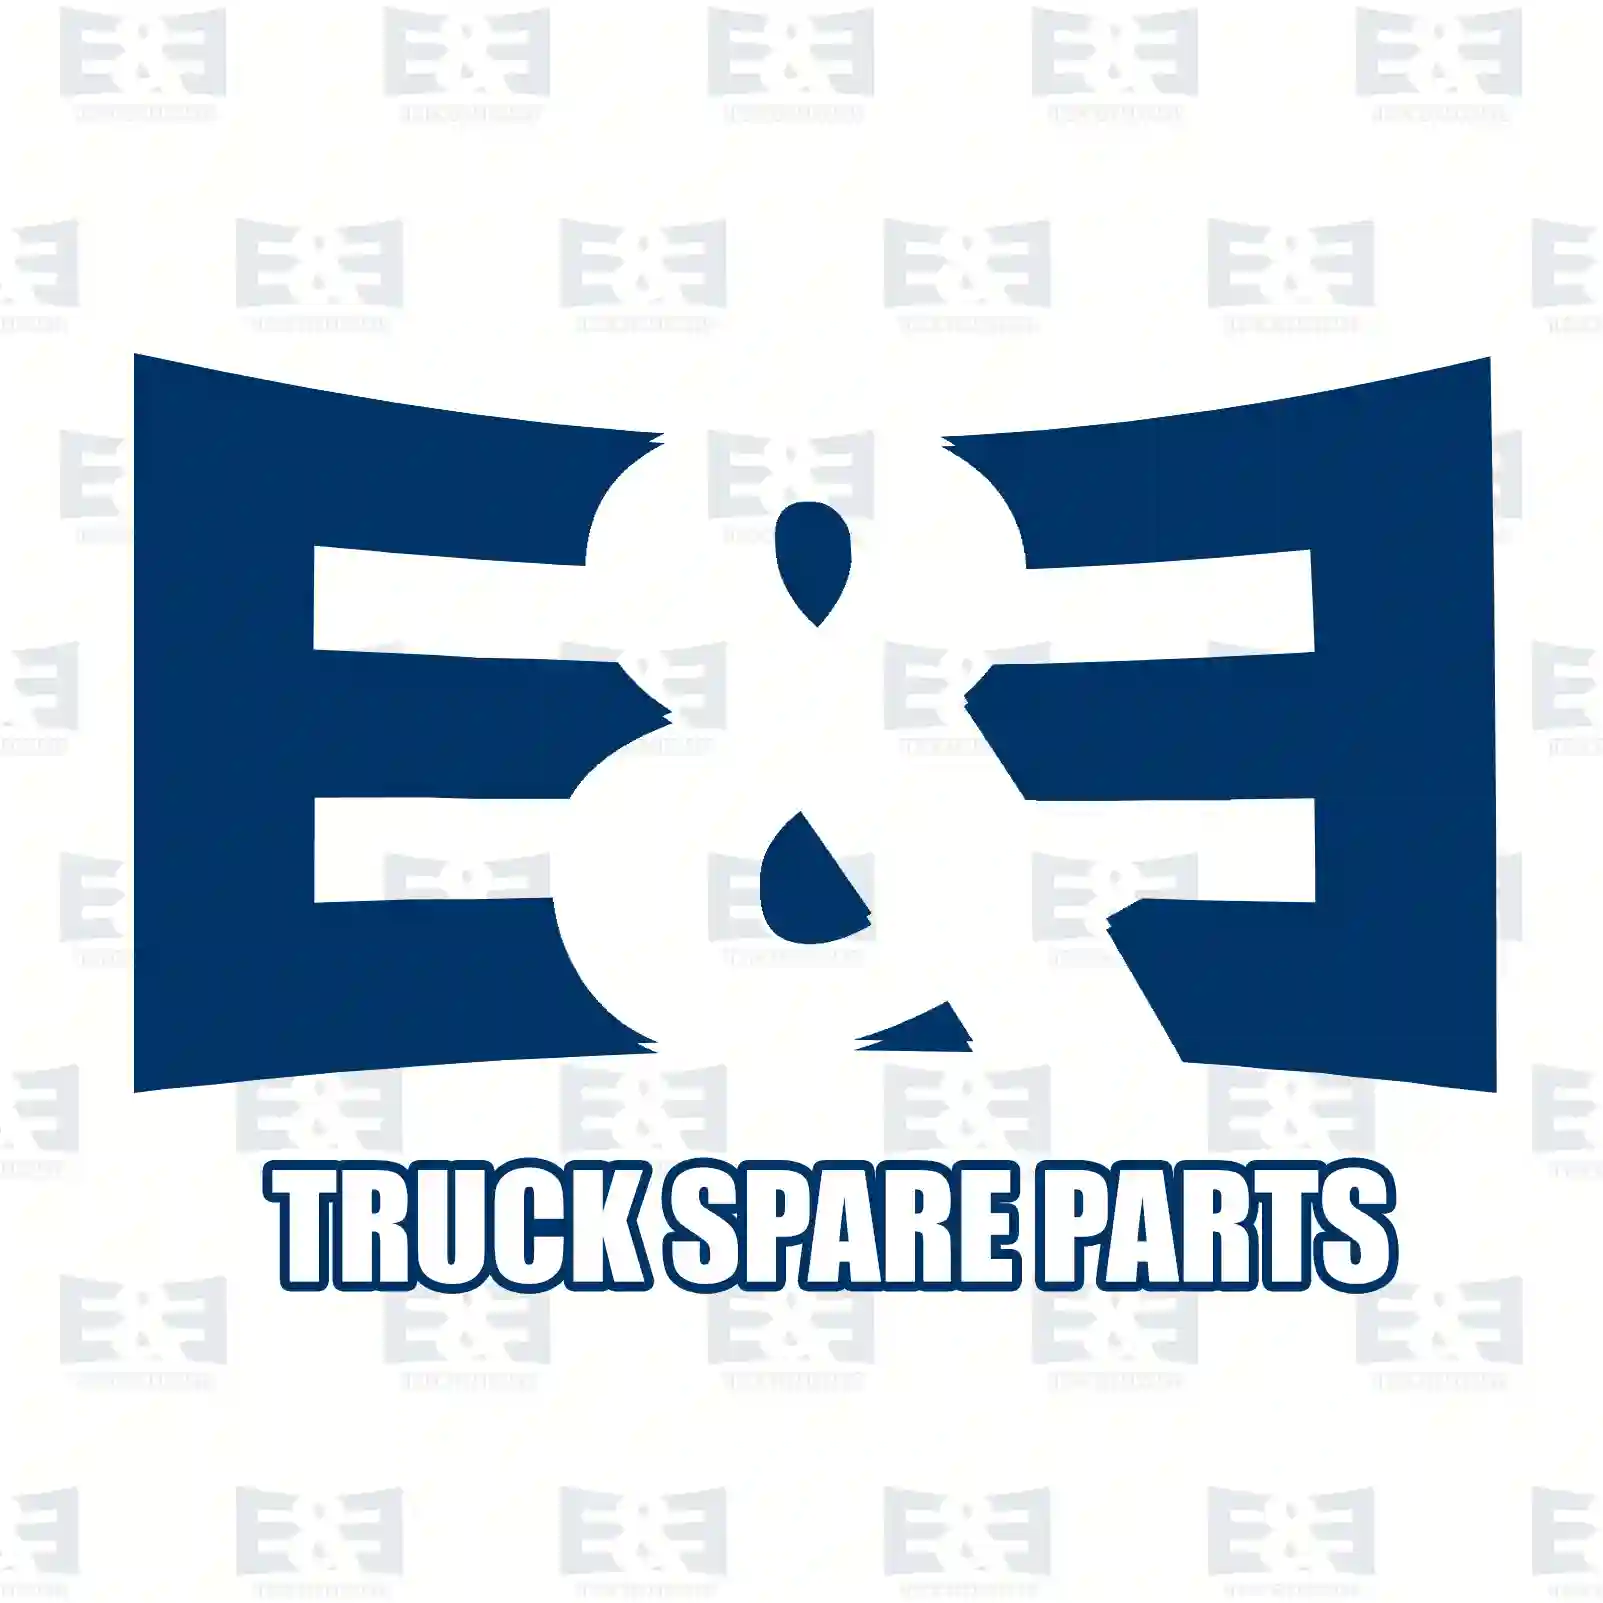 Radiator, 2E2203781, 1373156, 1383317, 6C11-8005-CA, 6C11-8005-CB, 6C11-8005-CC, 6C11-8005-CD ||  2E2203781 E&E Truck Spare Parts | Truck Spare Parts, Auotomotive Spare Parts Radiator, 2E2203781, 1373156, 1383317, 6C11-8005-CA, 6C11-8005-CB, 6C11-8005-CC, 6C11-8005-CD ||  2E2203781 E&E Truck Spare Parts | Truck Spare Parts, Auotomotive Spare Parts